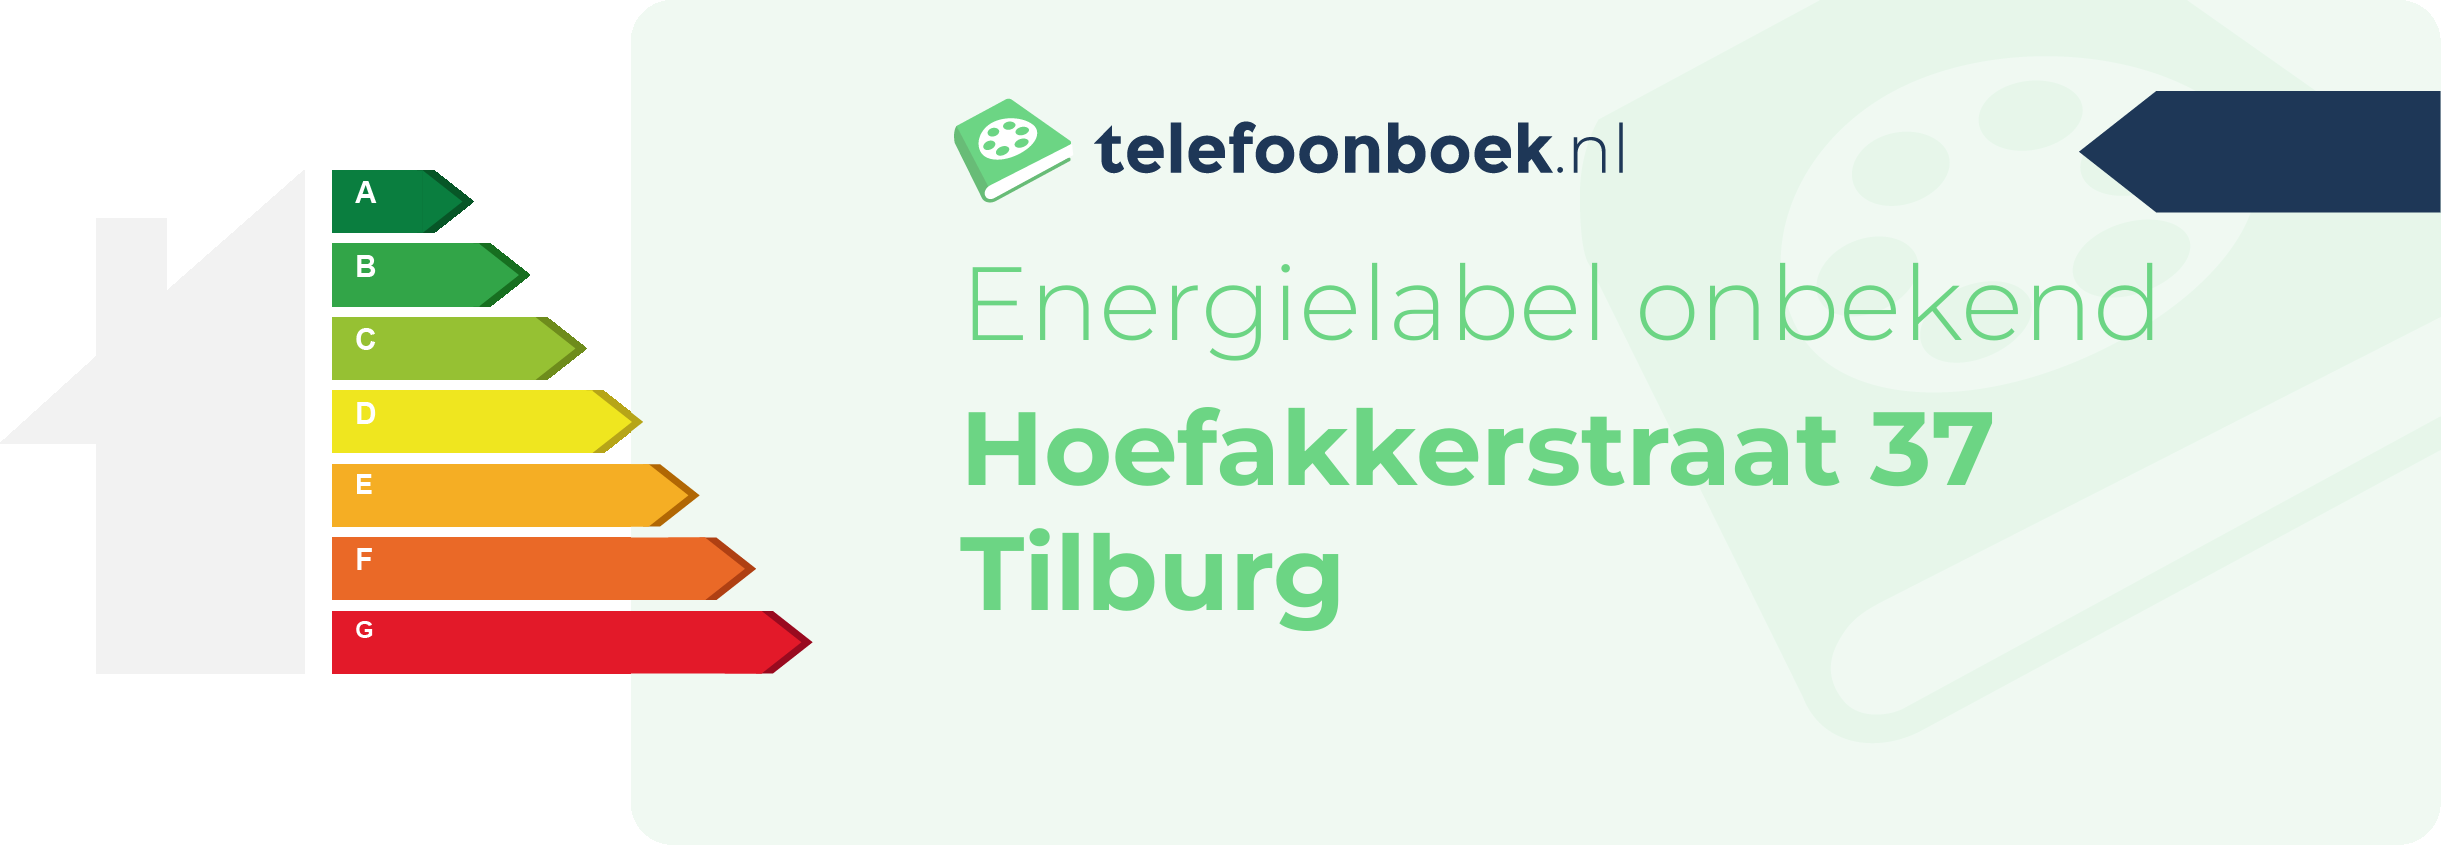 Energielabel Hoefakkerstraat 37 Tilburg